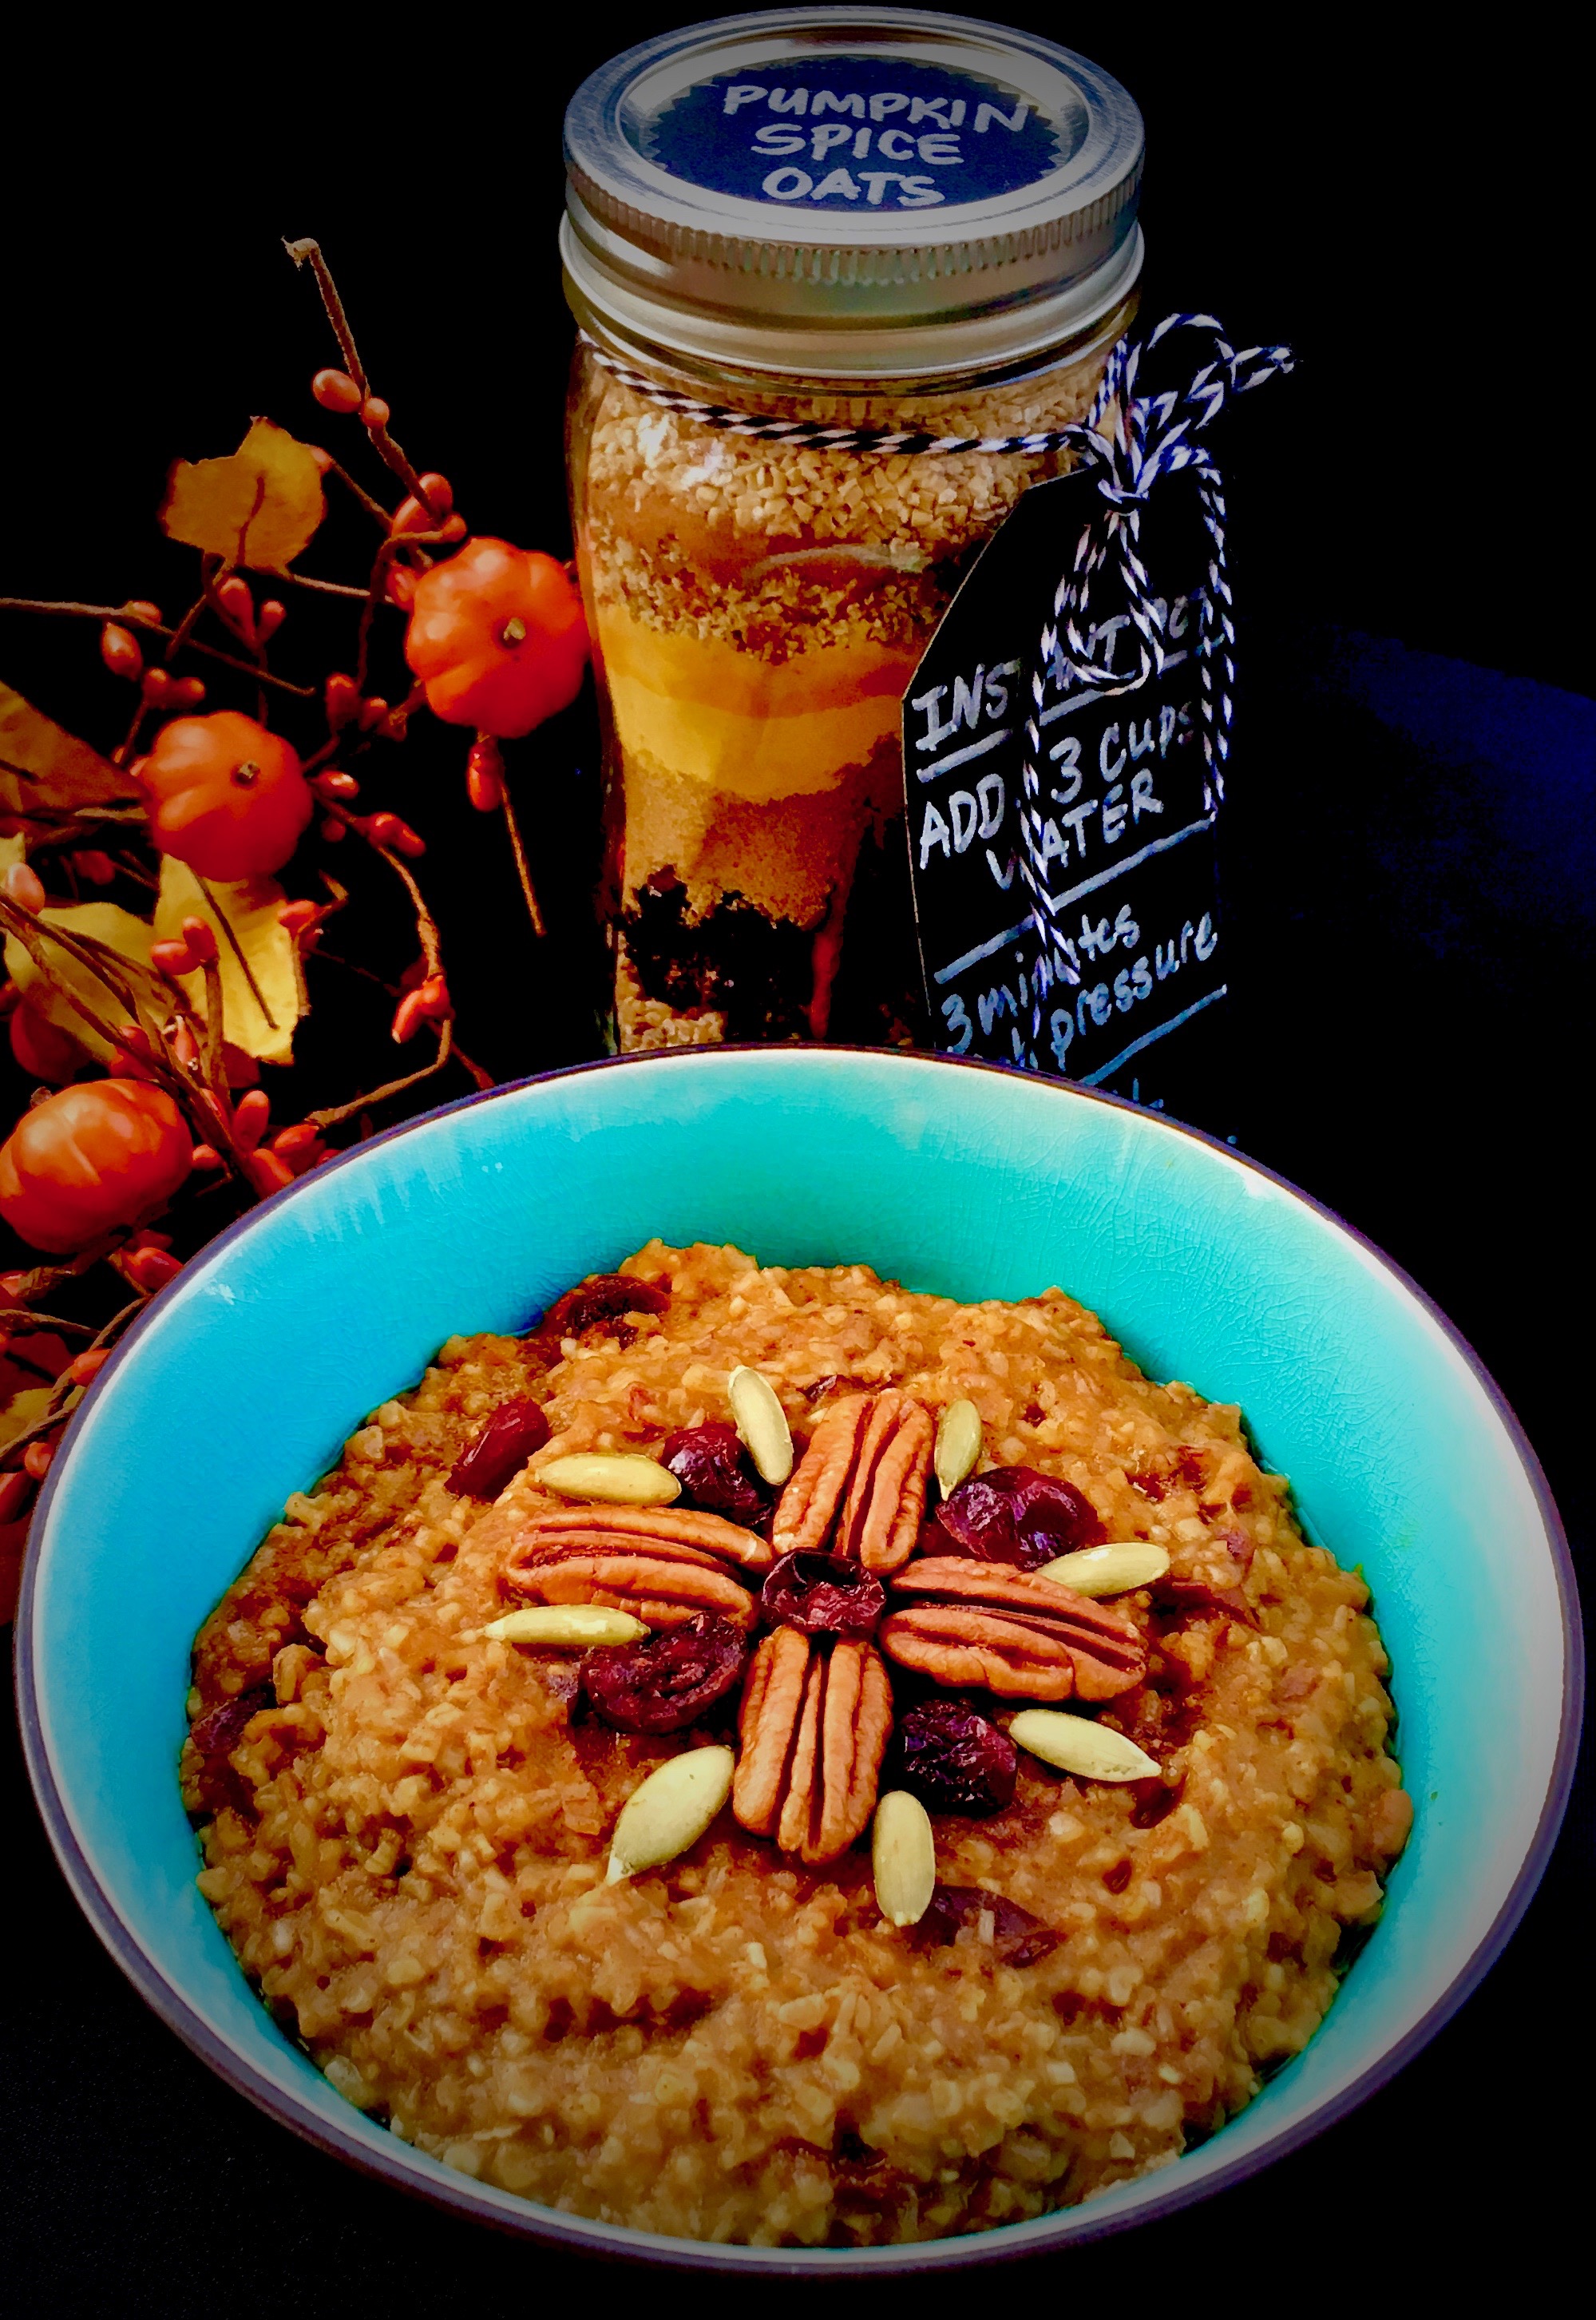 INSTANT POT MEAL KIT: Pumpkin Spice Steel-cut oats